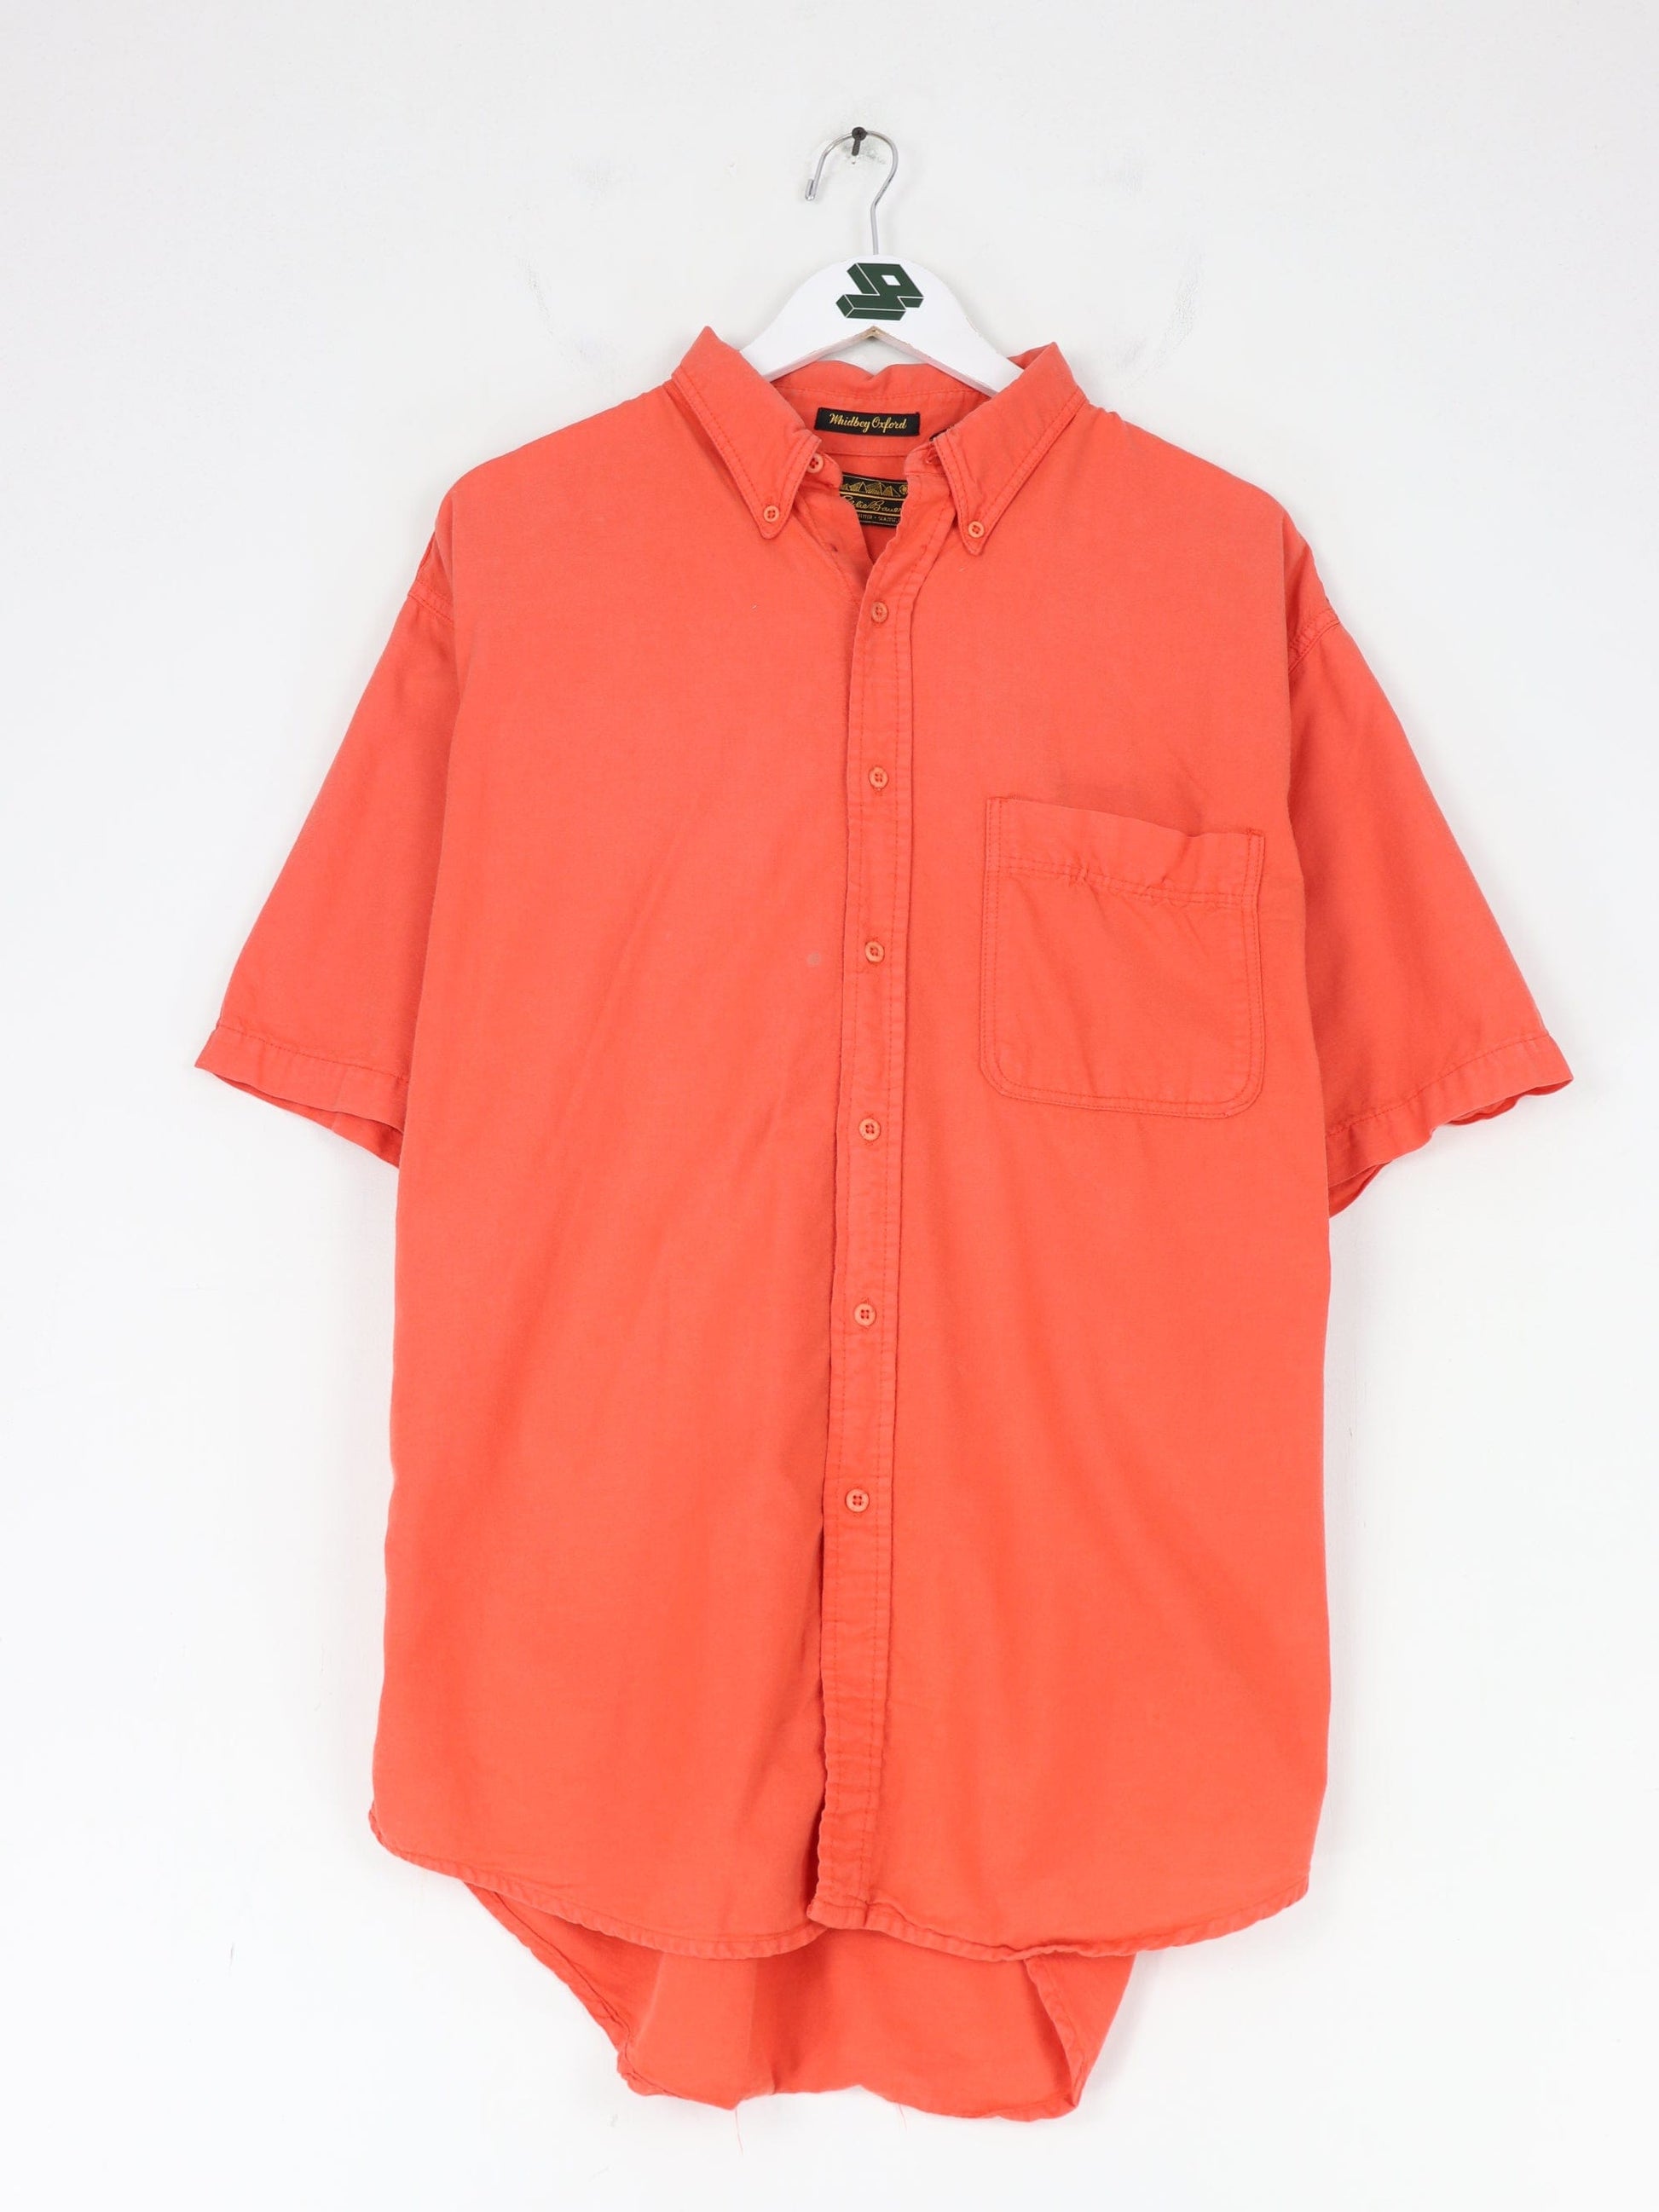 Vintage Eddie Bauer Shirt Mens Large Orange 90s Short Sleeve Button Outdoor